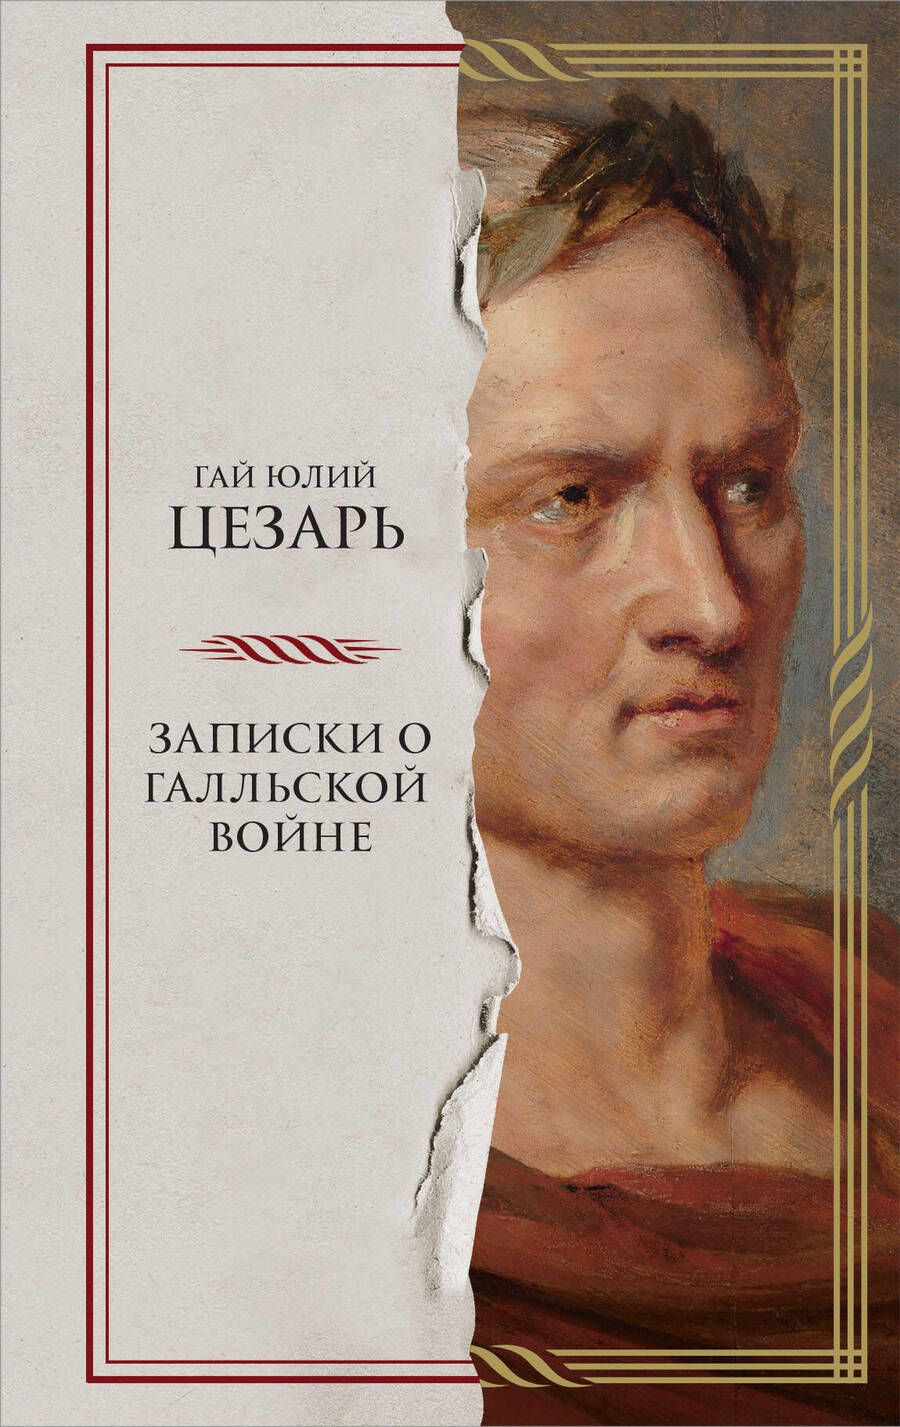 Обложка книги "Гай Цезарь: Записки о Галльской войне"